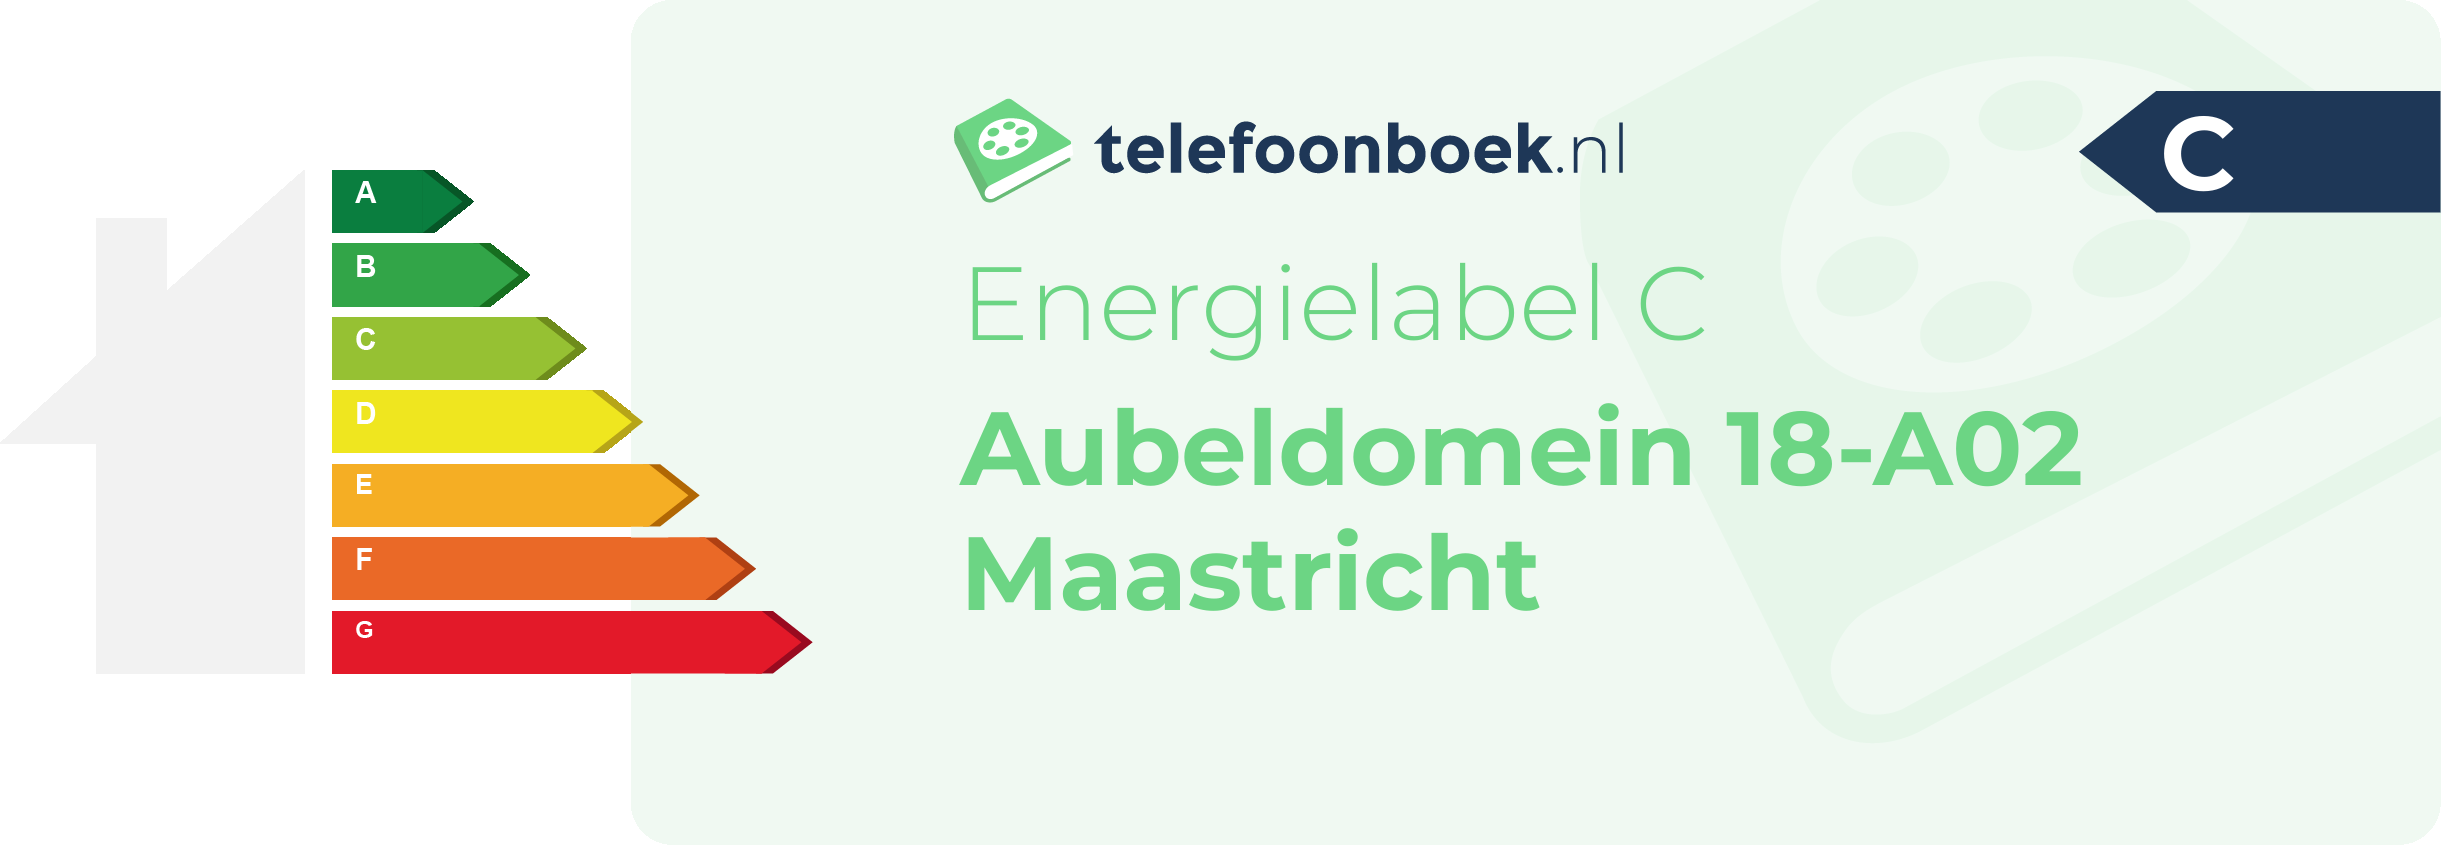 Energielabel Aubeldomein 18-A02 Maastricht